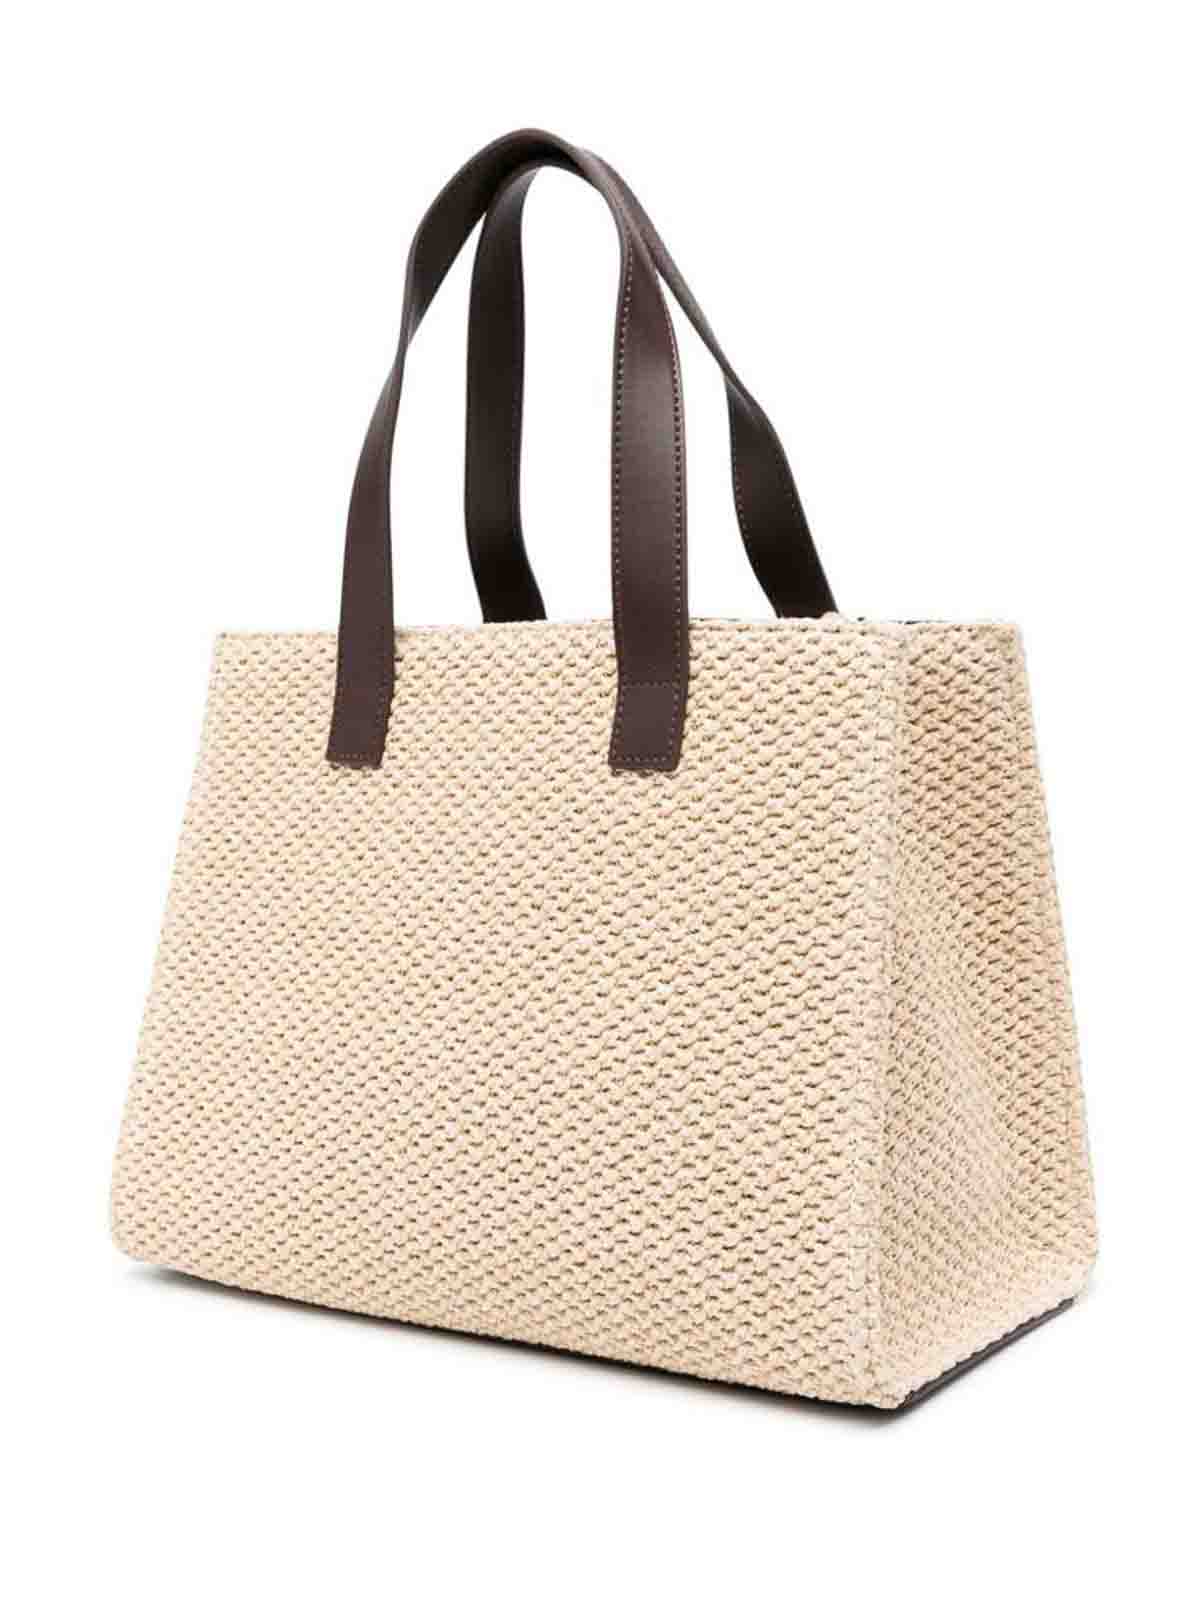 Shop Twinset Woven Design Top Handles Bag In Beige